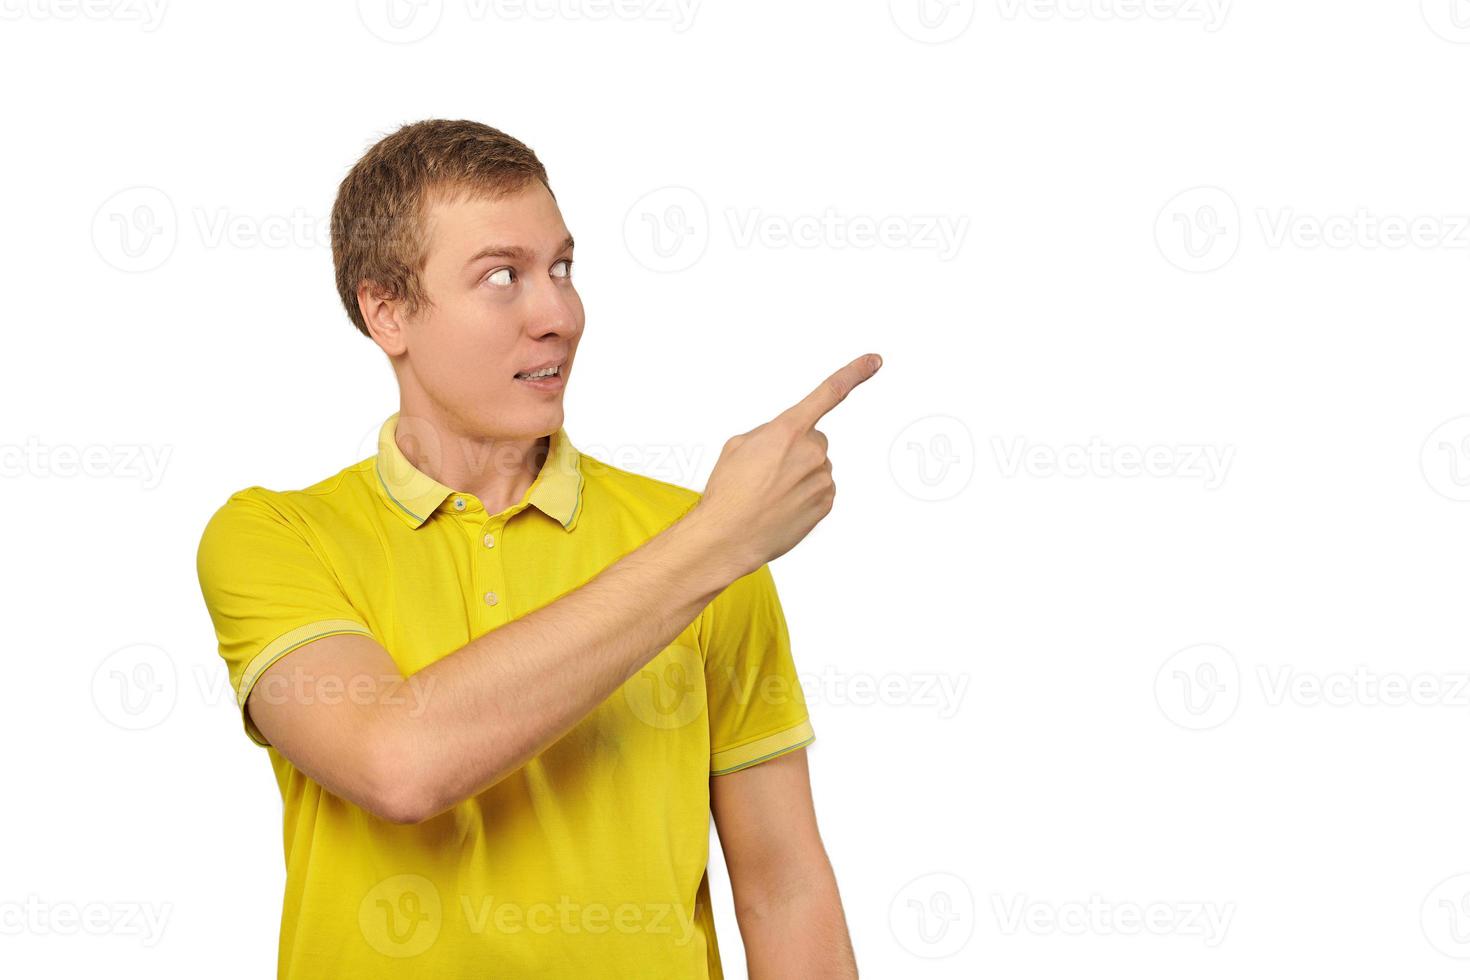 Guy surpris avec drôle de visage en t-shirt jaune vif pointant le doigt vers la droite, fond blanc photo